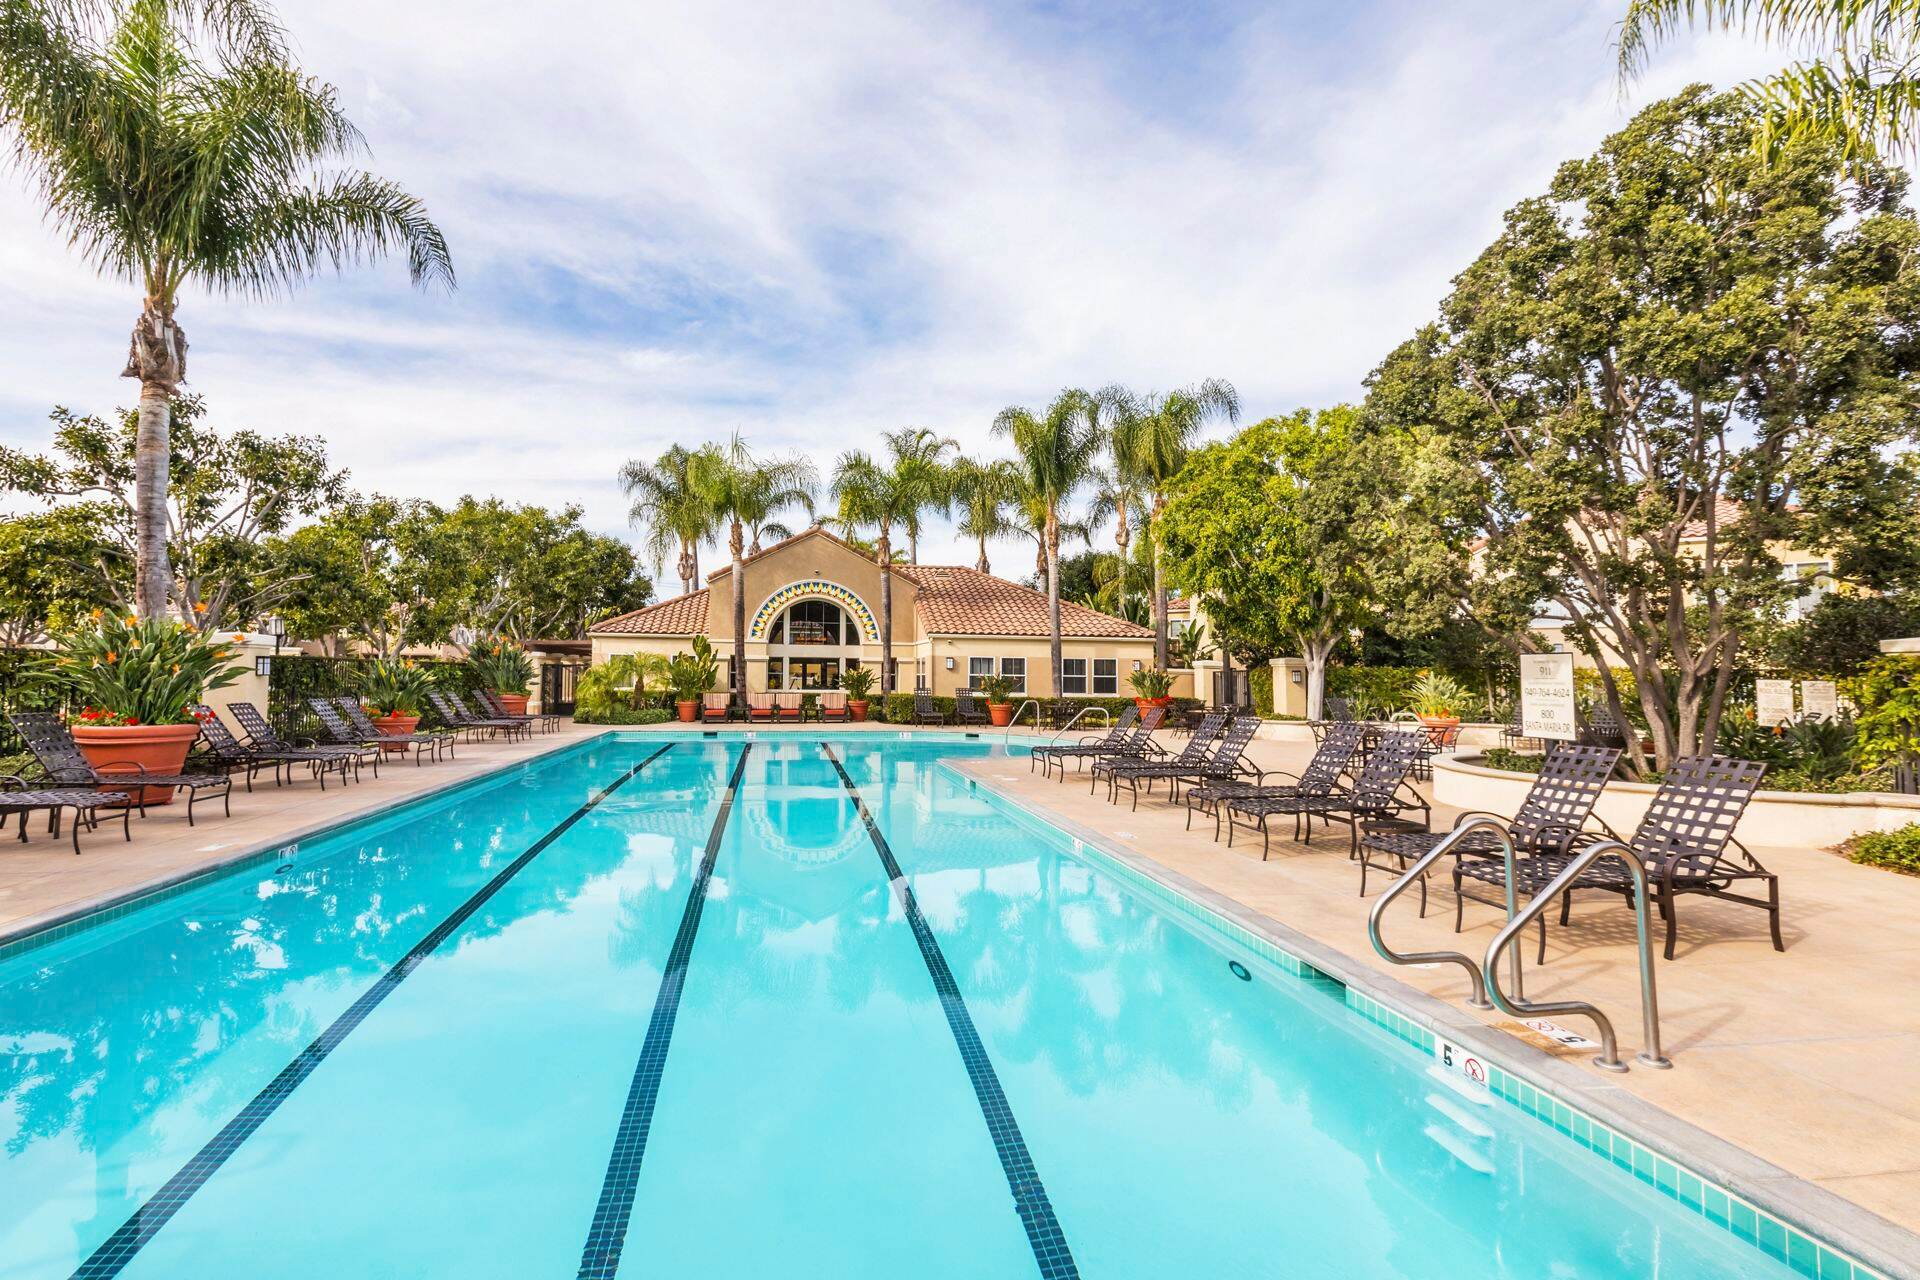 Pool view at Santa Maria Apartment Homes in Irvine, CA.